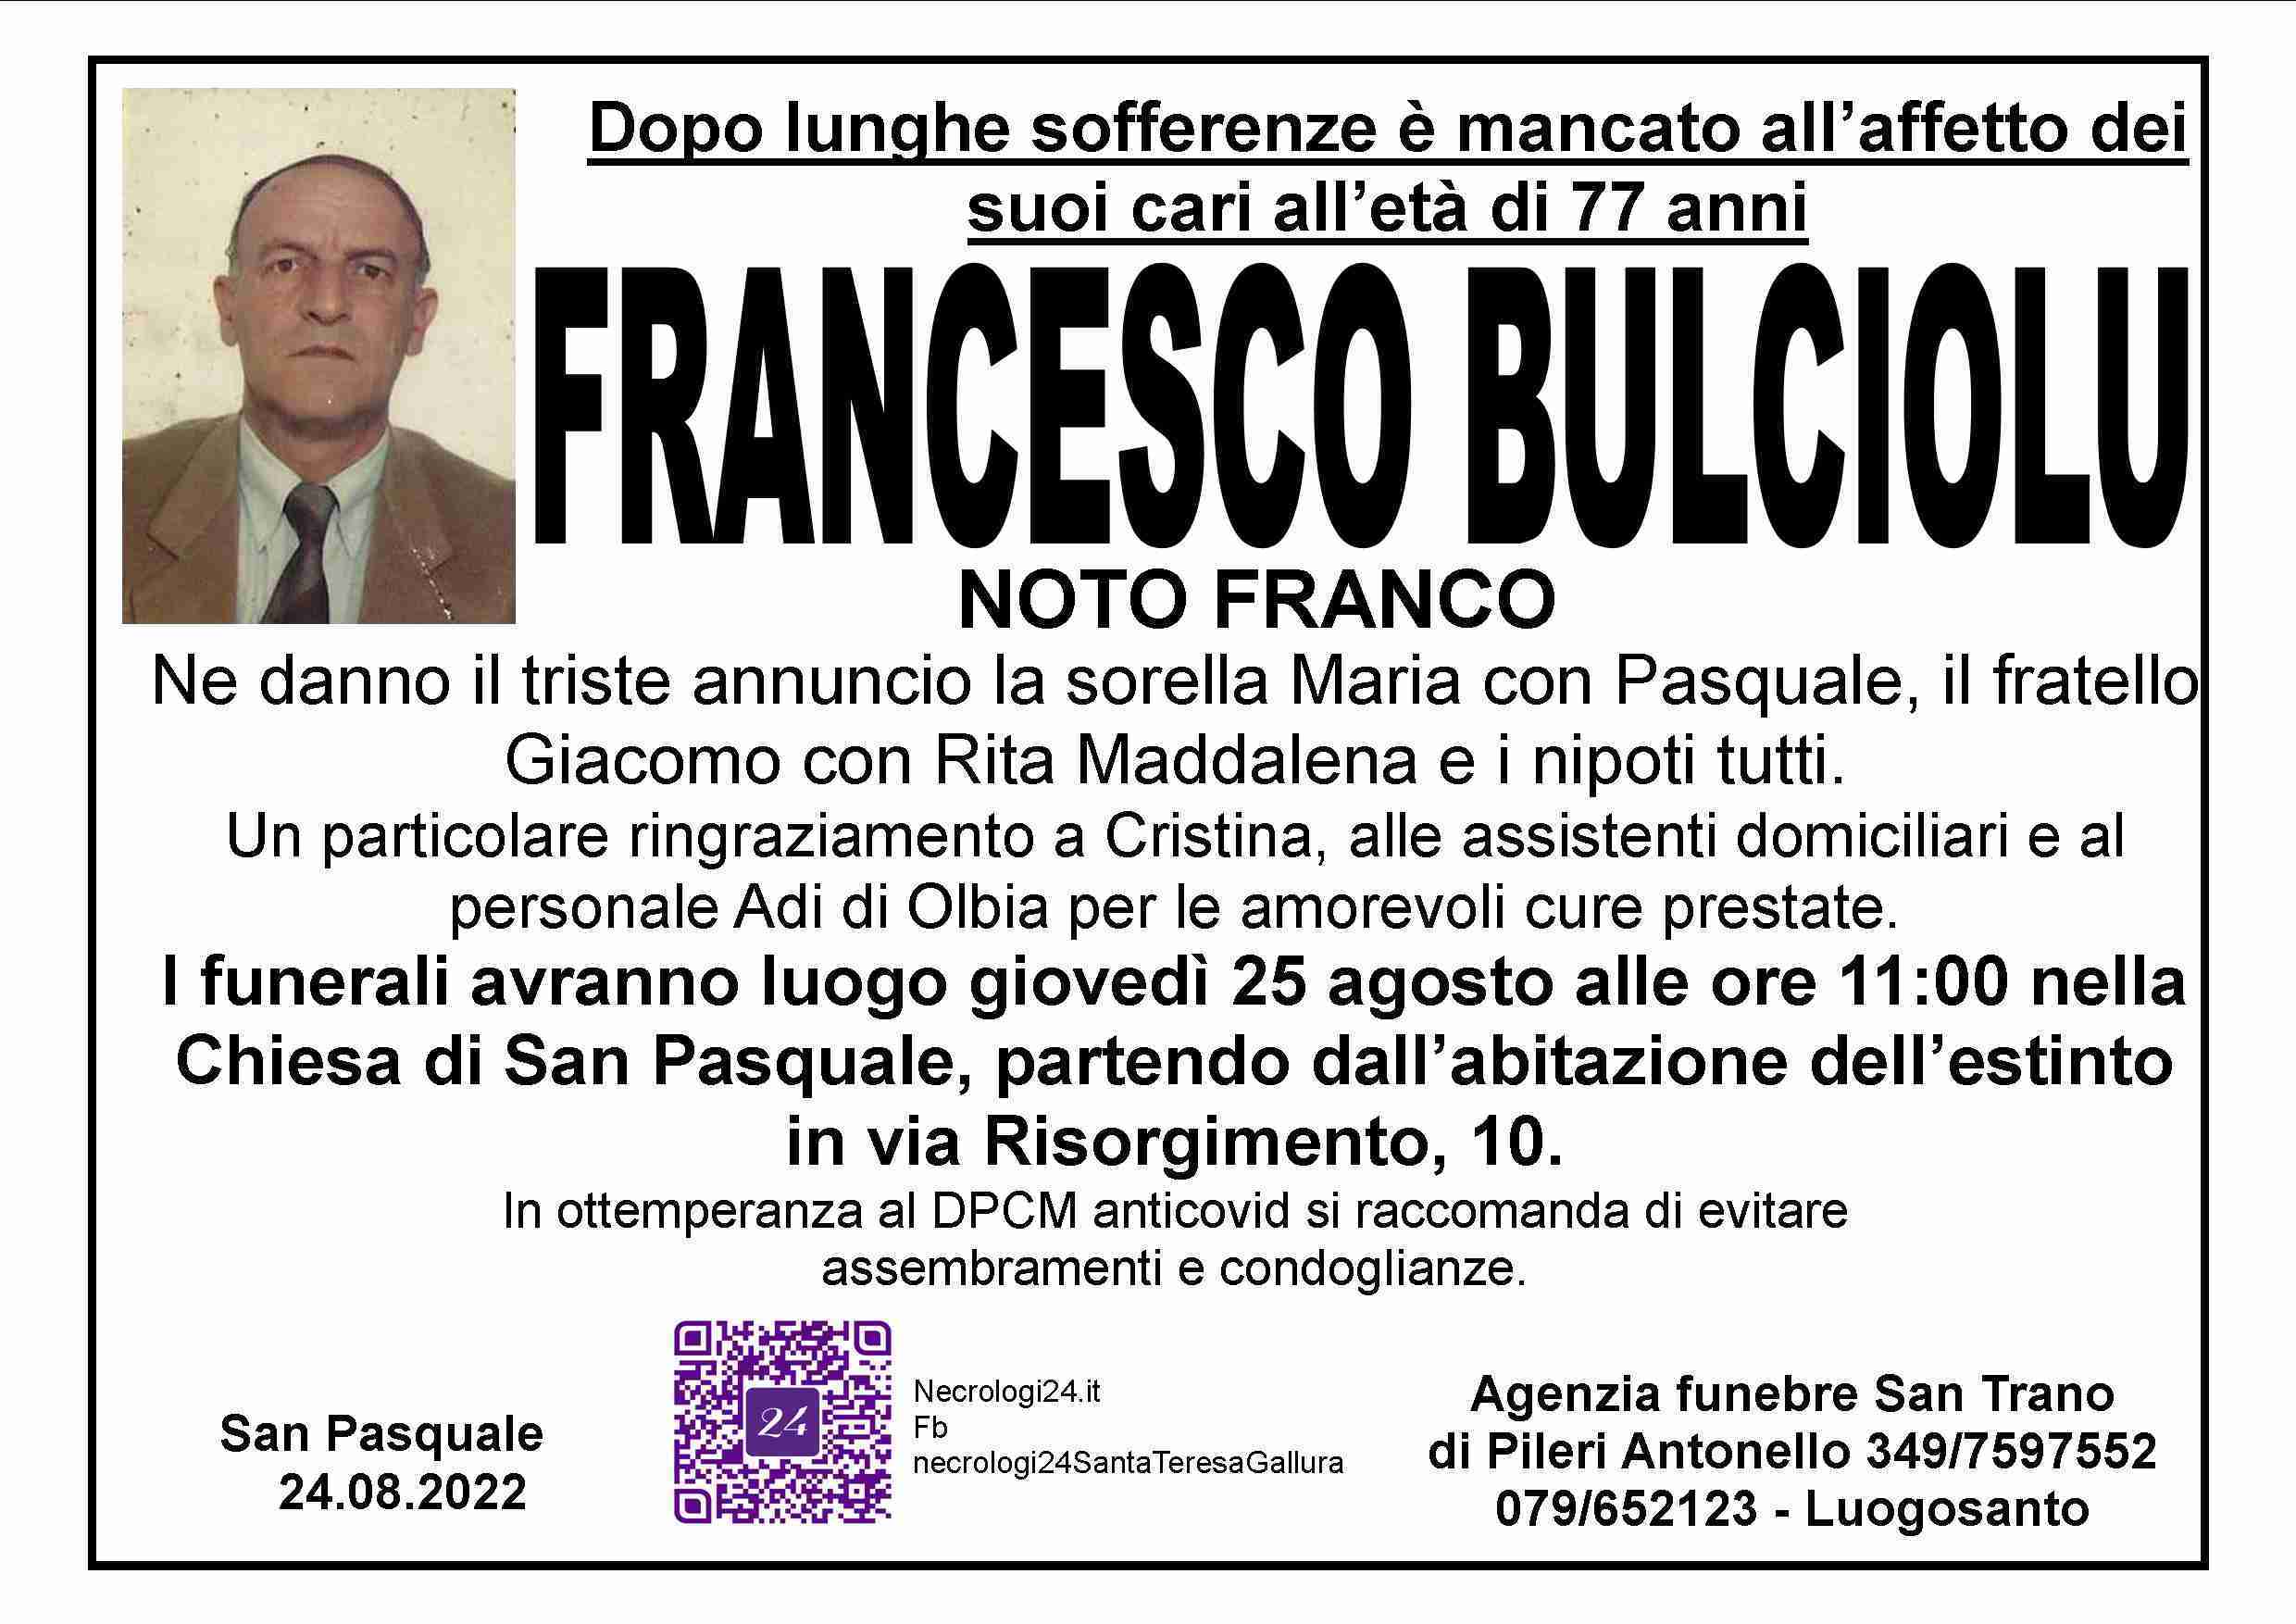 Francesco Bulciolu